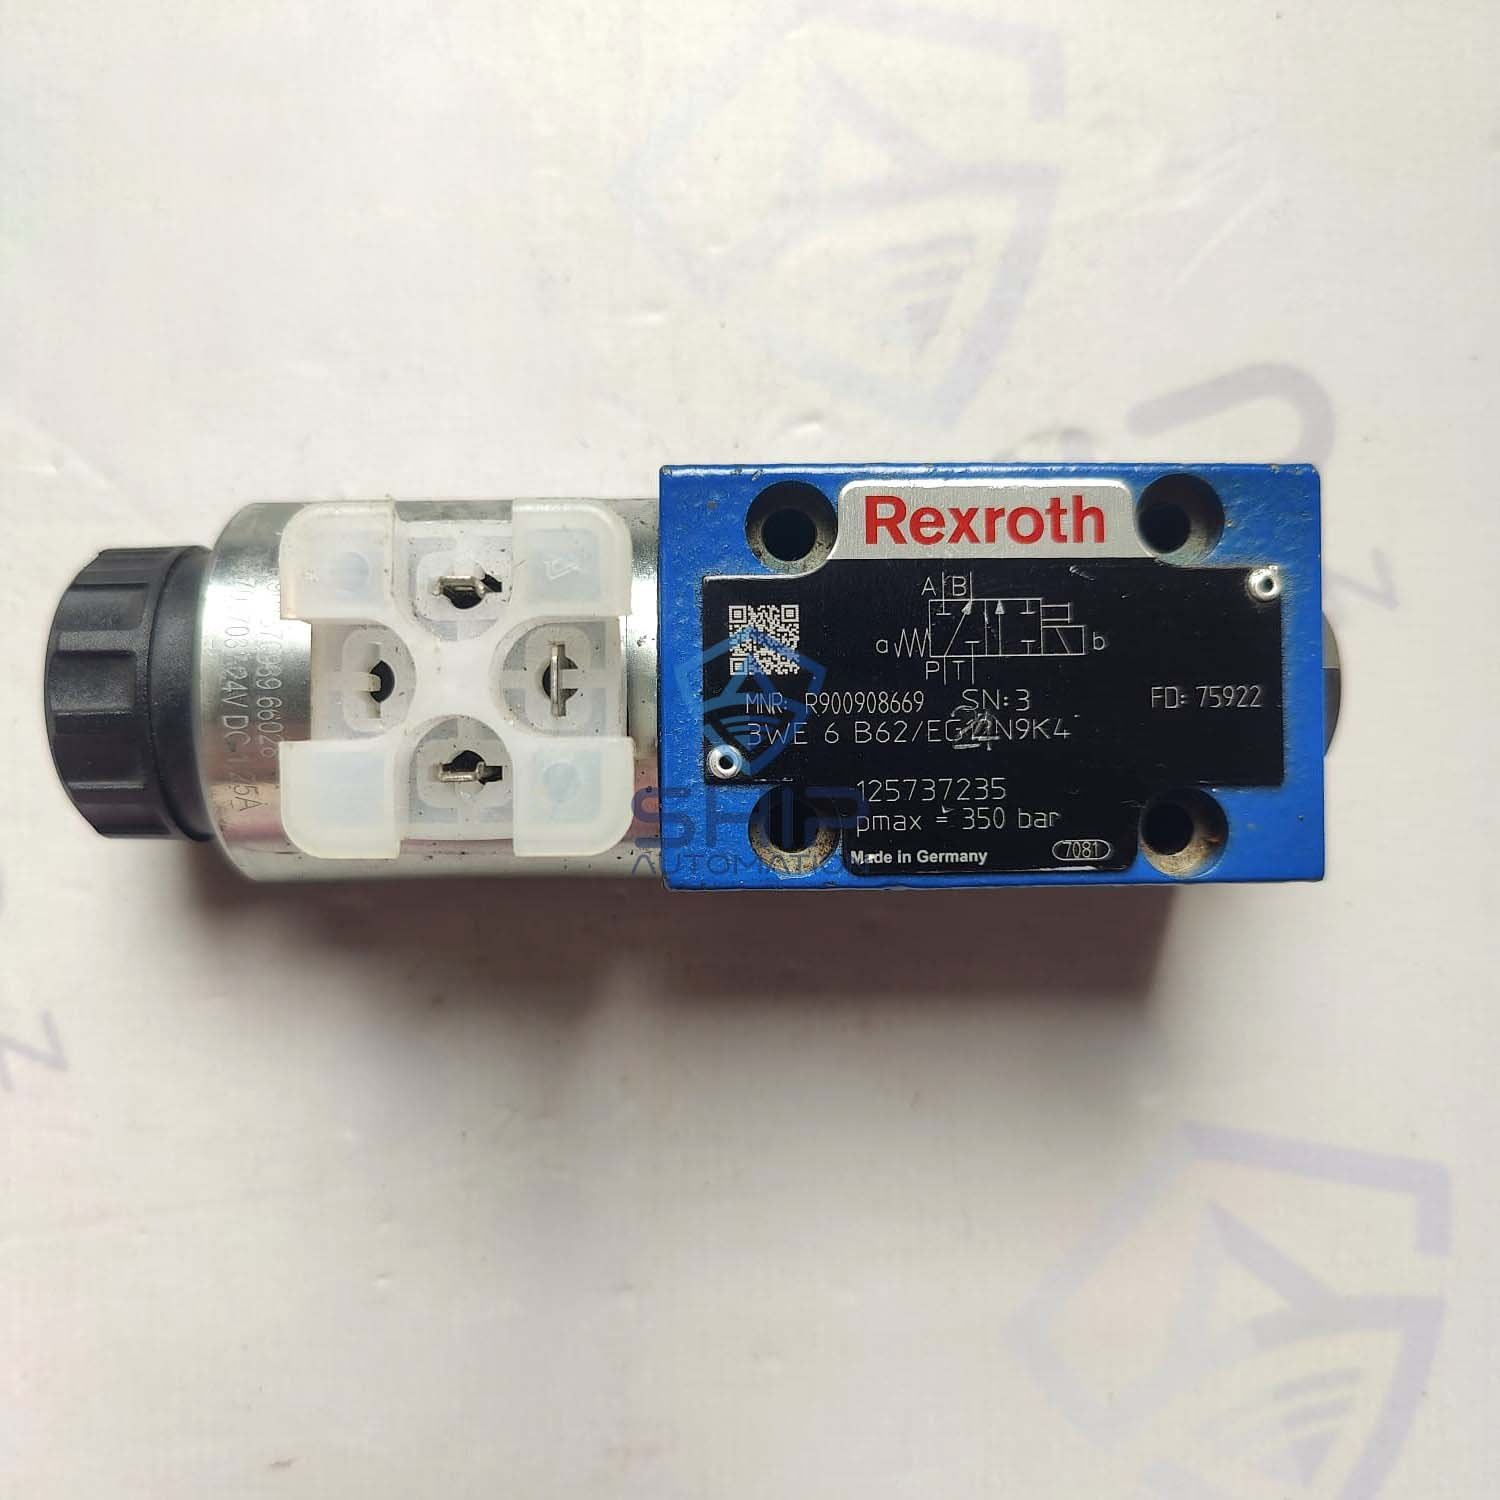 Rexroth 3 WE 6 B62/EG12N9K4 | Direction Control Valve (R900908669)